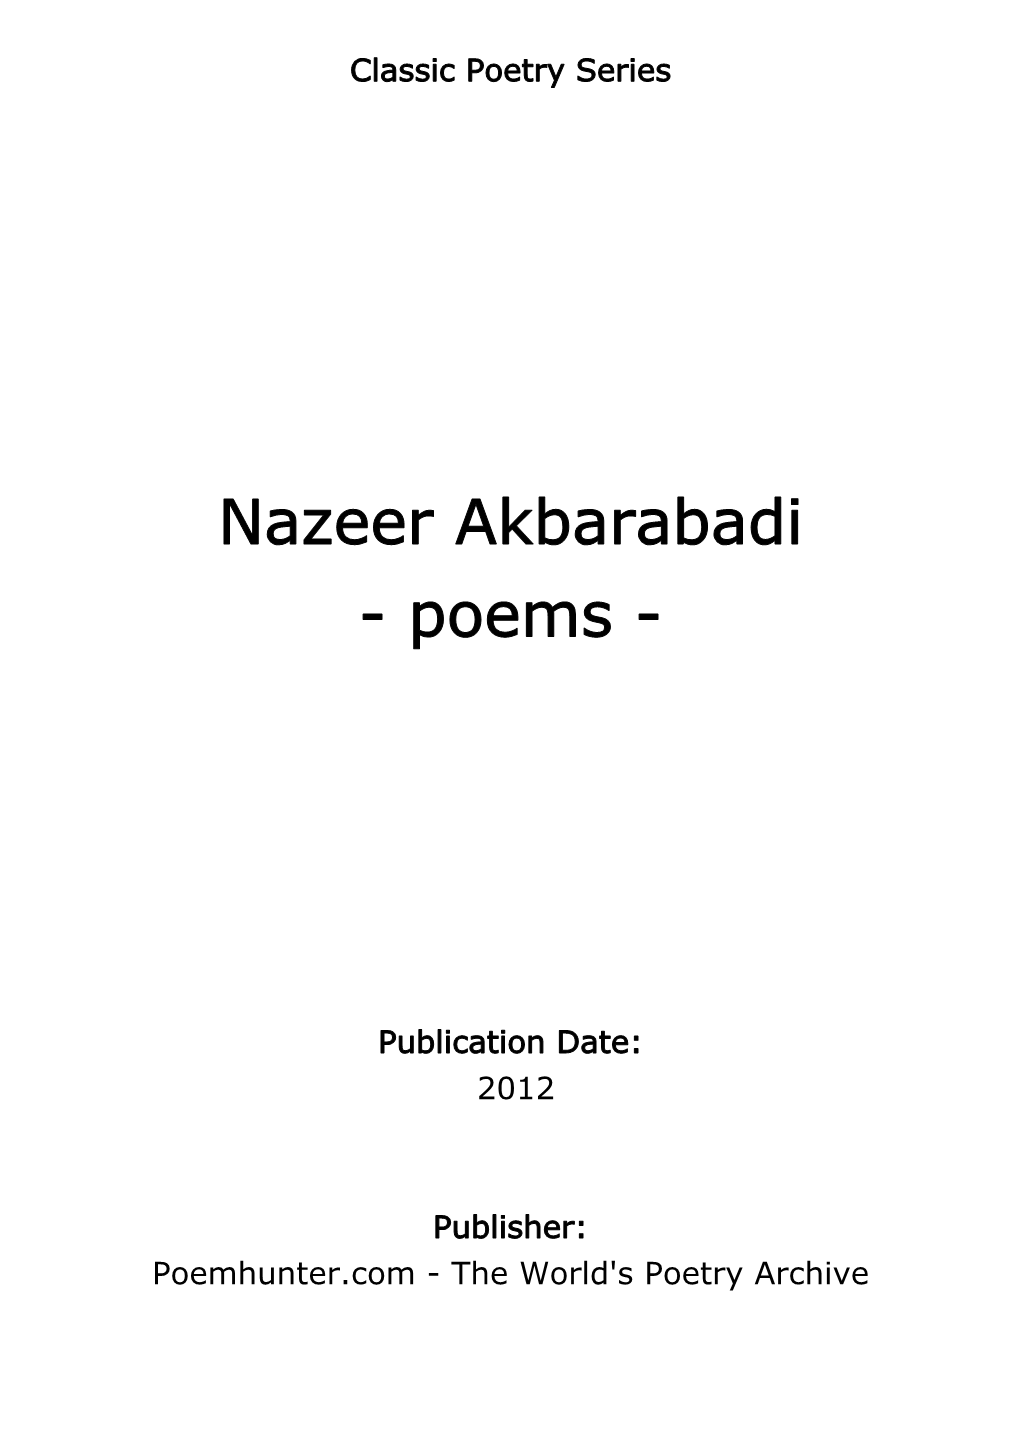 Nazeer Akbarabadi - Poems